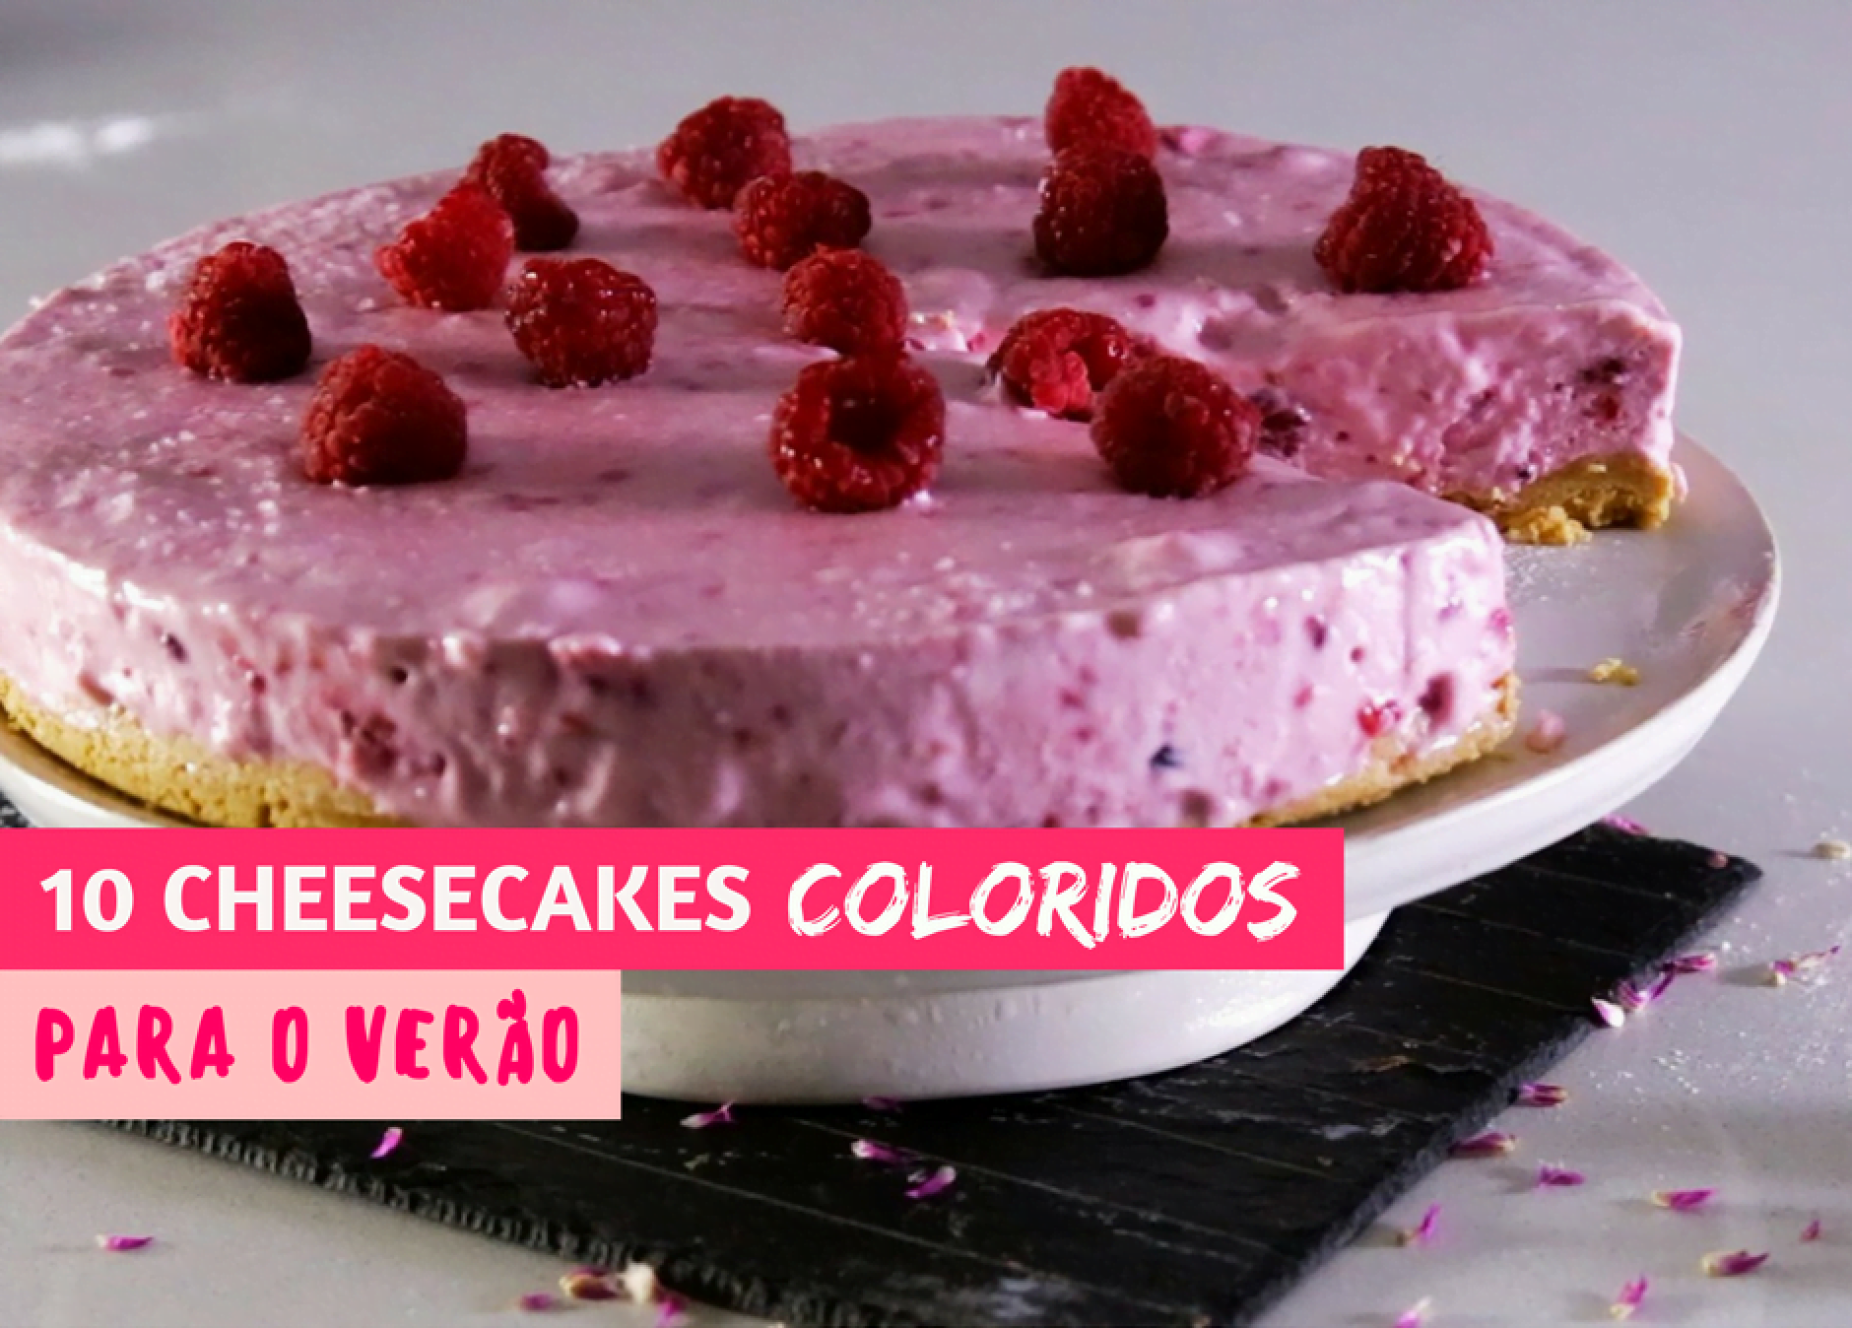 10 cheesecakes coloridos para o Verão